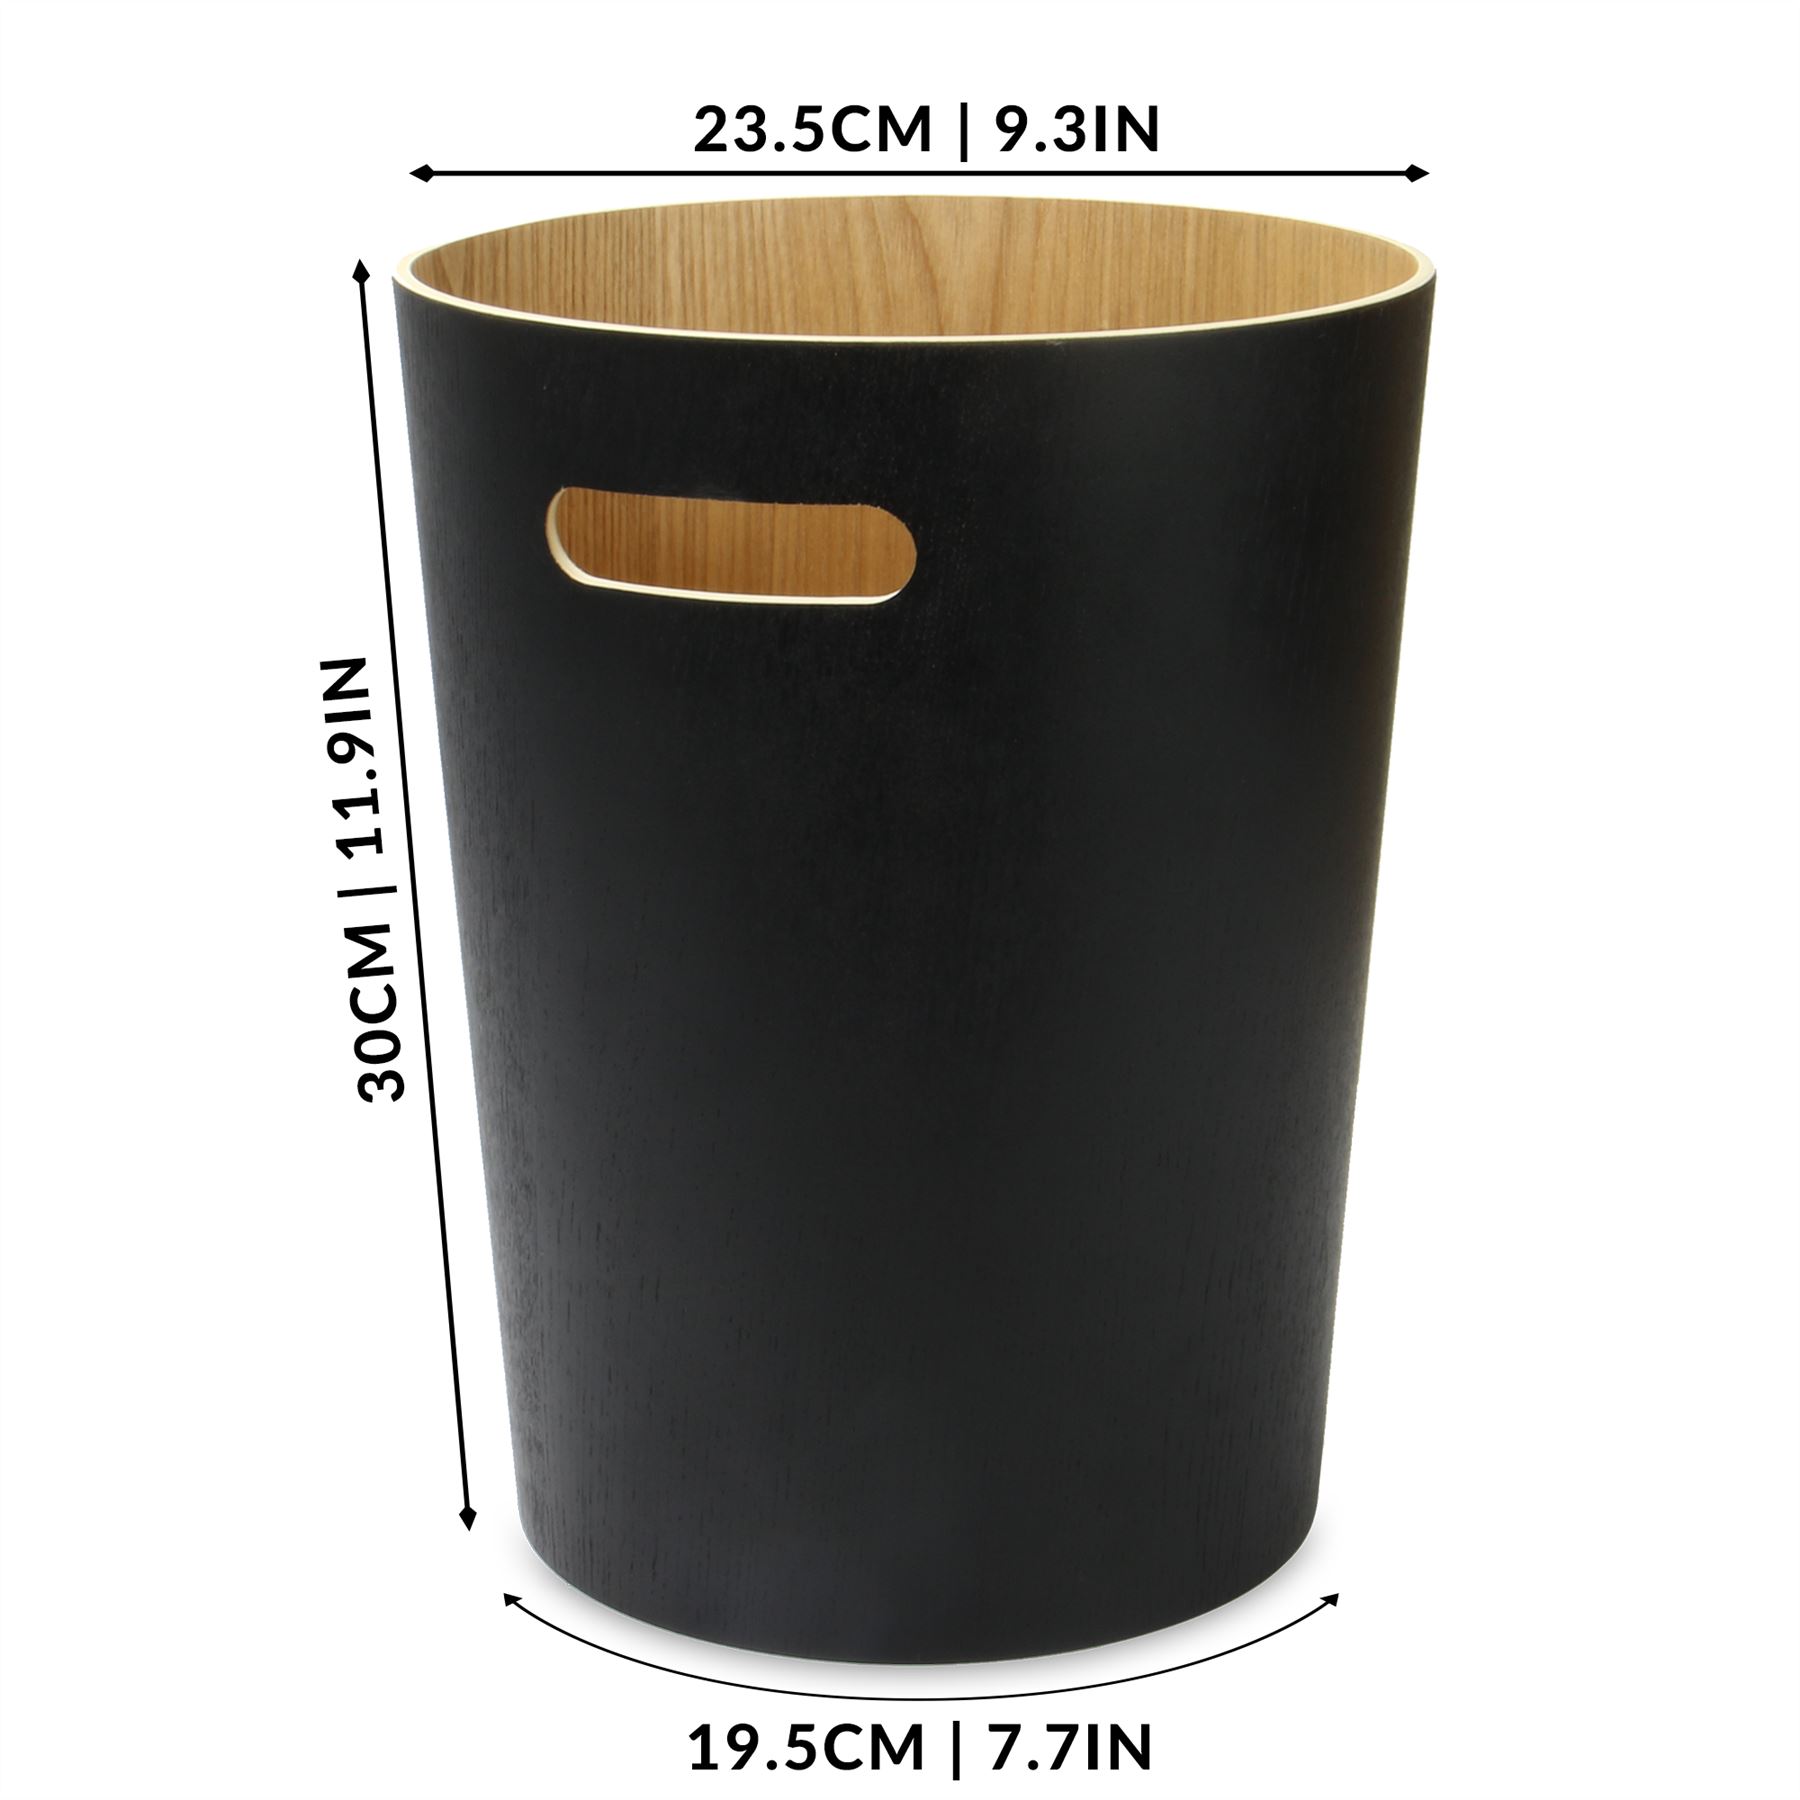 Wooden Waste Paper Bin Black | M&W